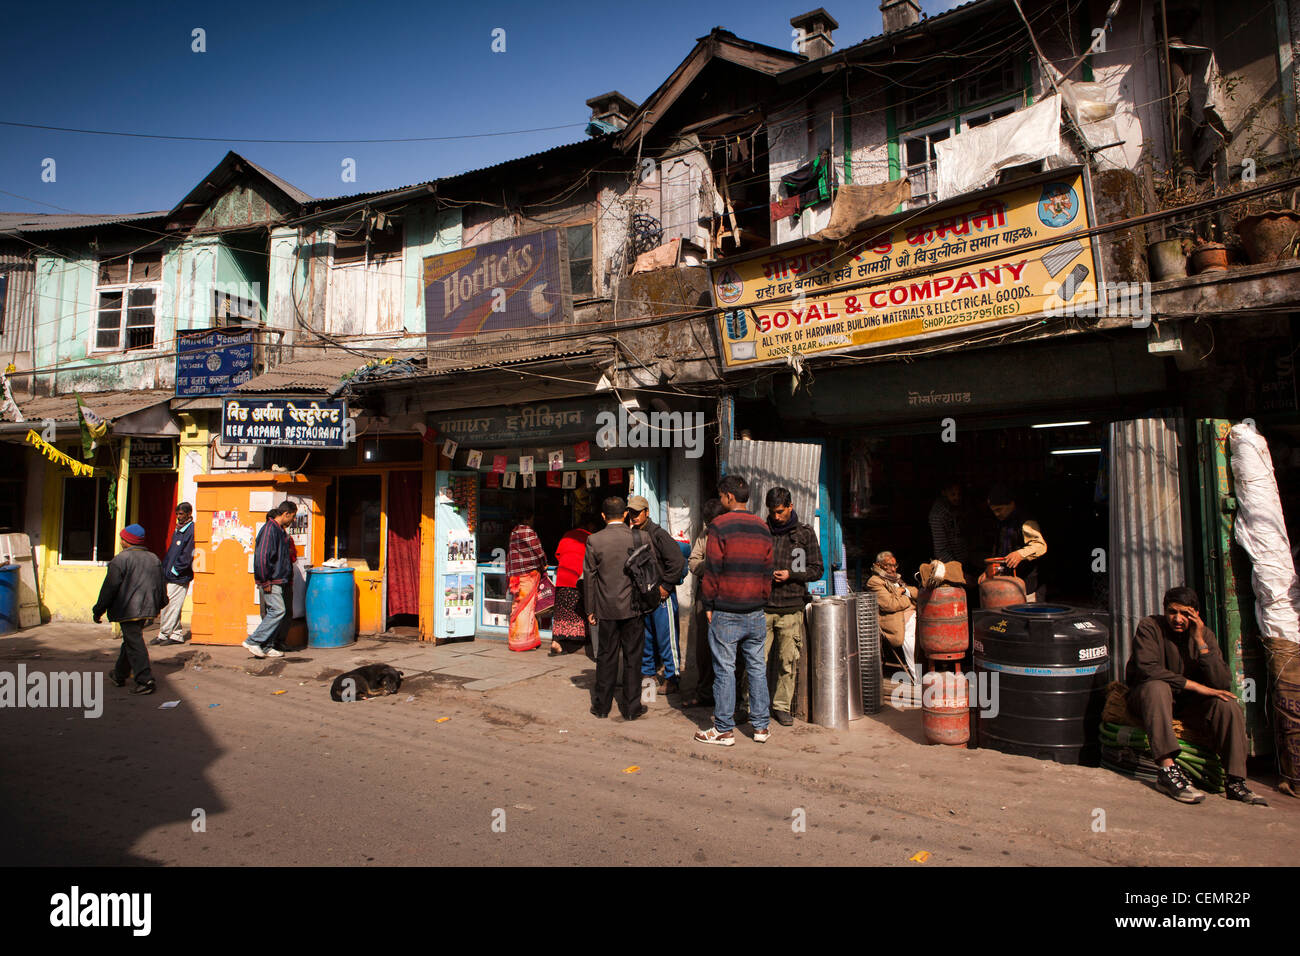 India, West Bengal, Darjeeling, Judge Bazaar, hardware stores in old wooden colonial era shops Stock Photo